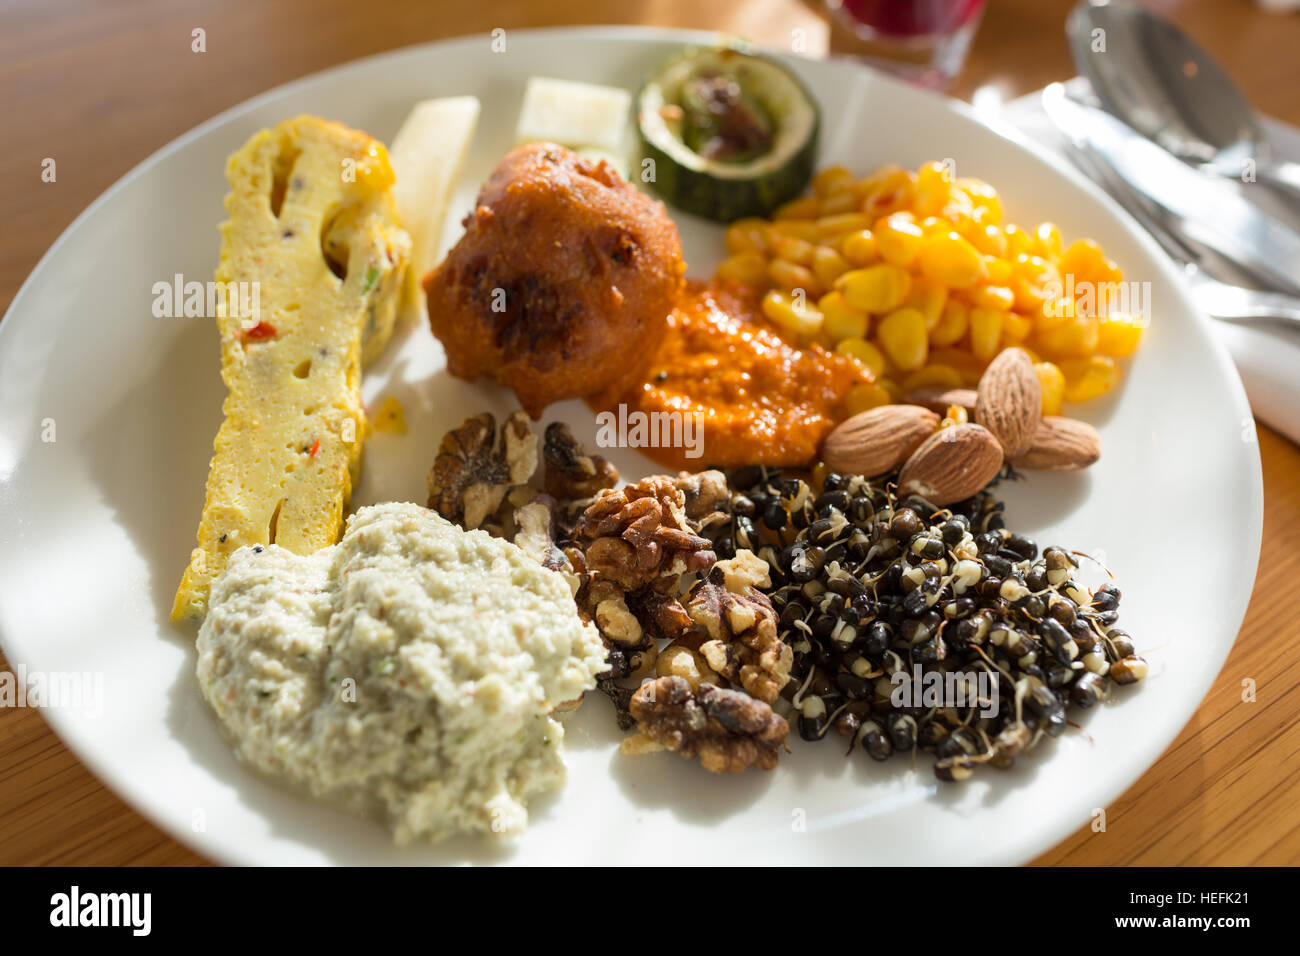 Köstliches indisches Frühstück bestehend aus Sortiment von Eiern, Walnüsse, Mandeln, Mais, Auswuchs schwarz Gramm Mysore Bonda und Chutney Stockfoto